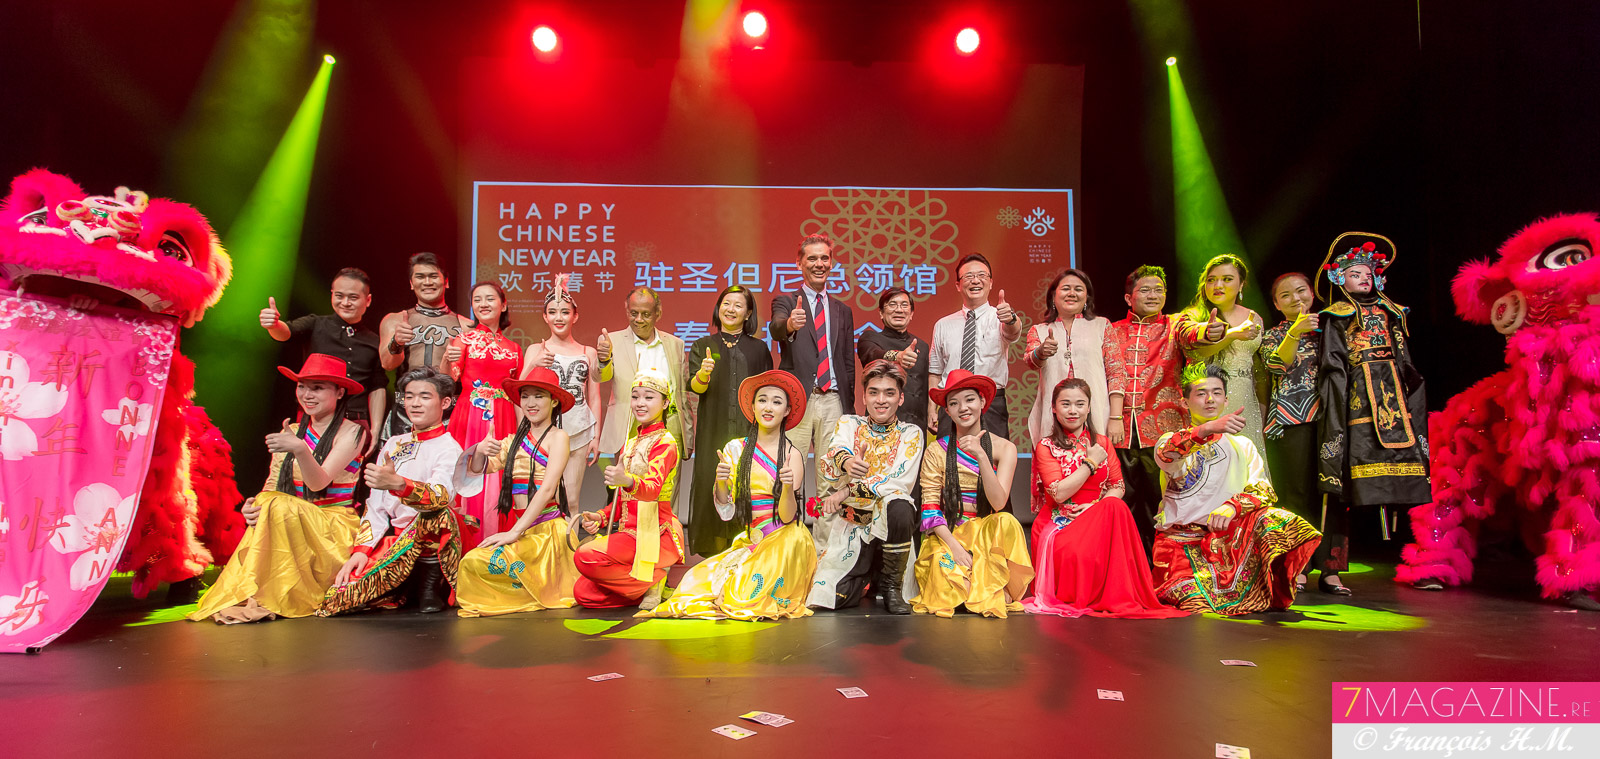 Nouvel An Chinois: "Joyeuse Fête du Printemps" à la Cité des Arts